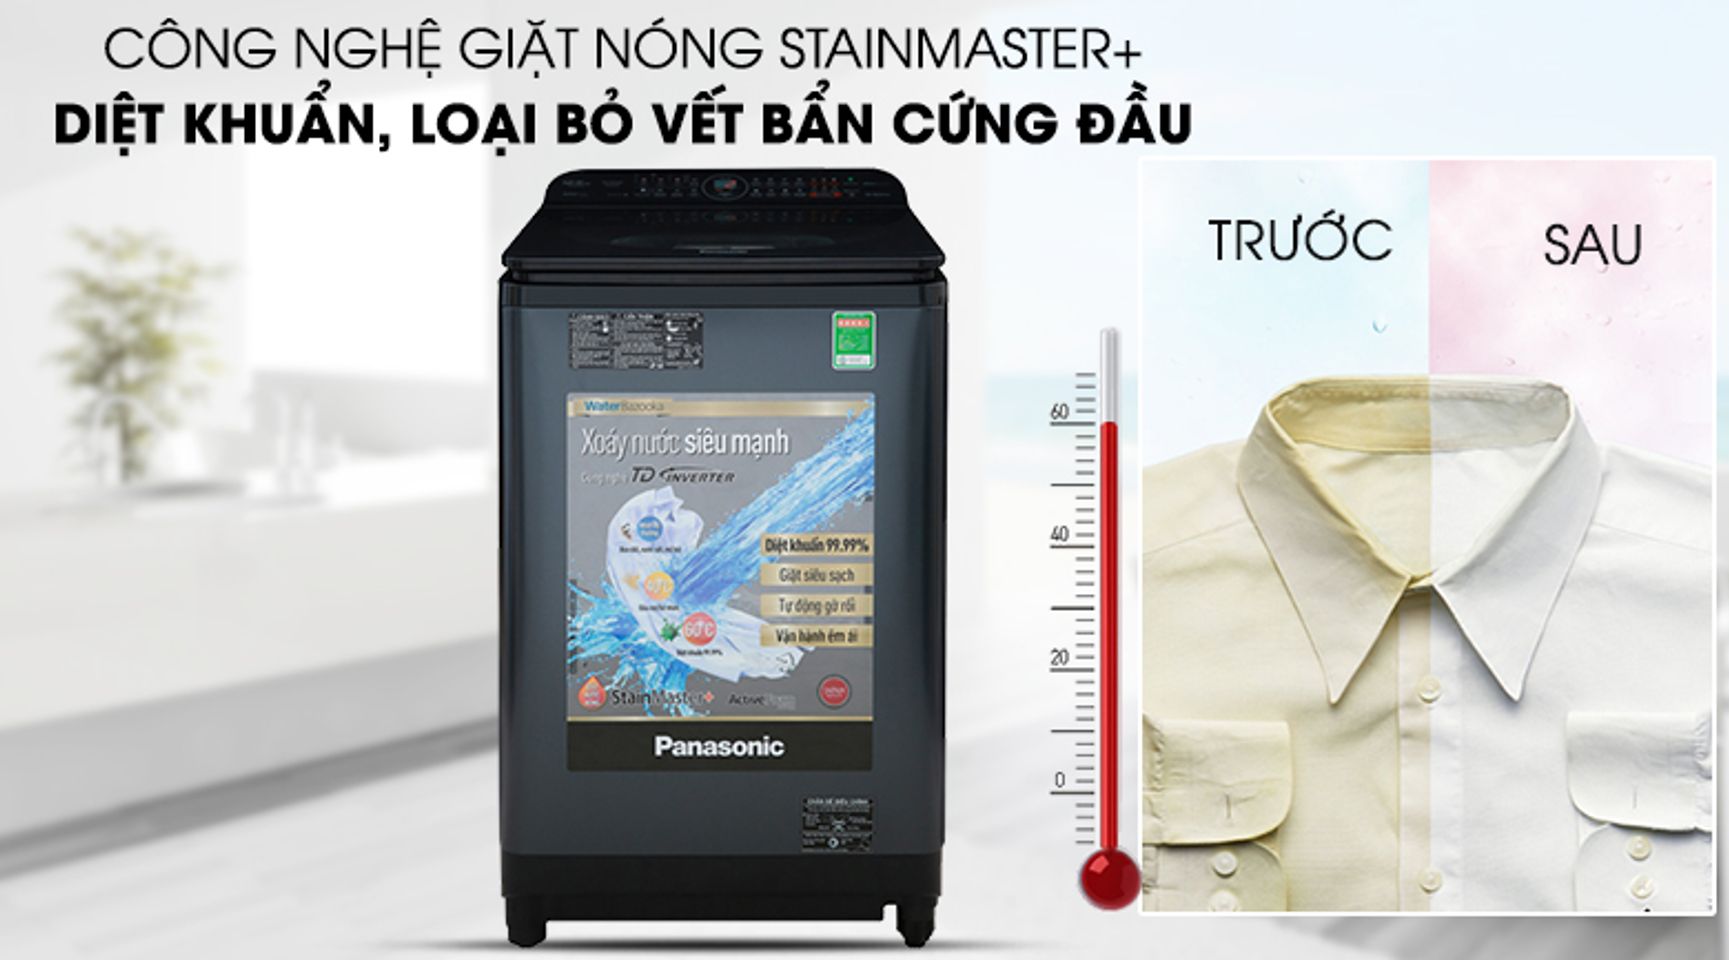 Máy giặt này còn được trang bị công nghệ giặt nước nóng StainMaster+